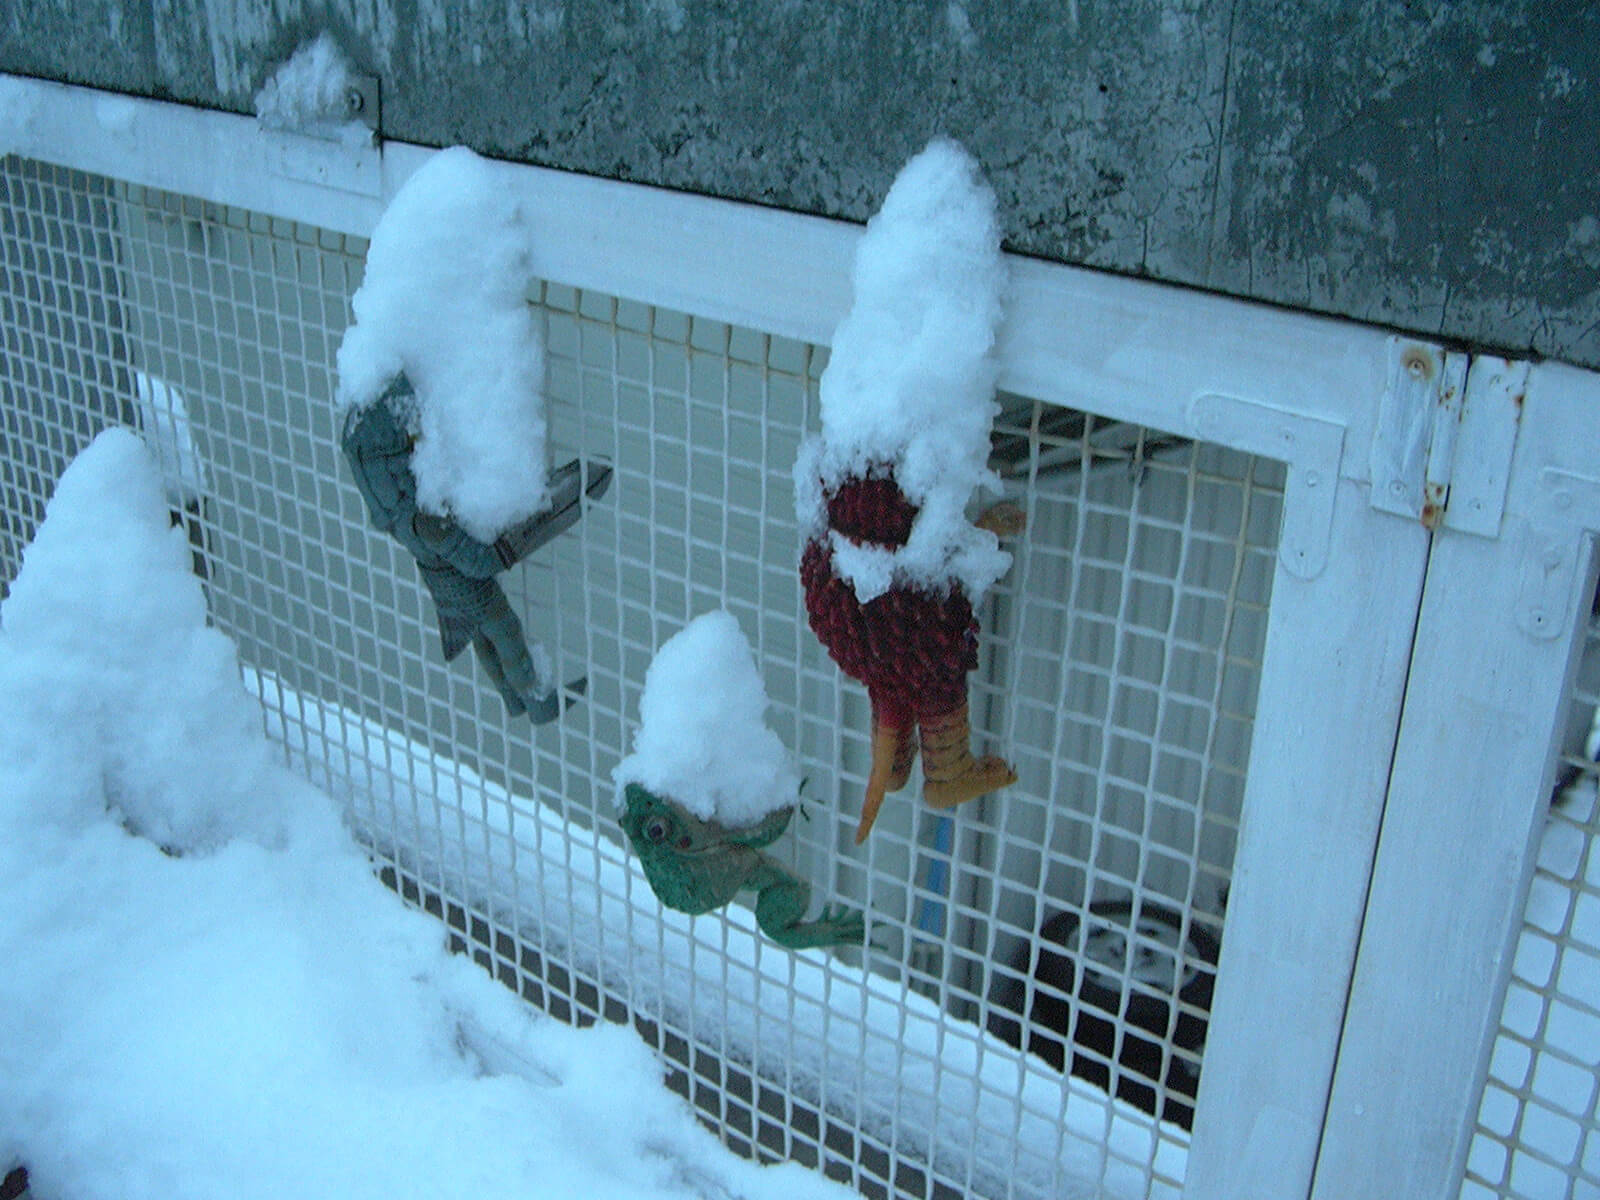 ベランダのネットにかけられた3体の怪獣の人形に、雪が積もっている